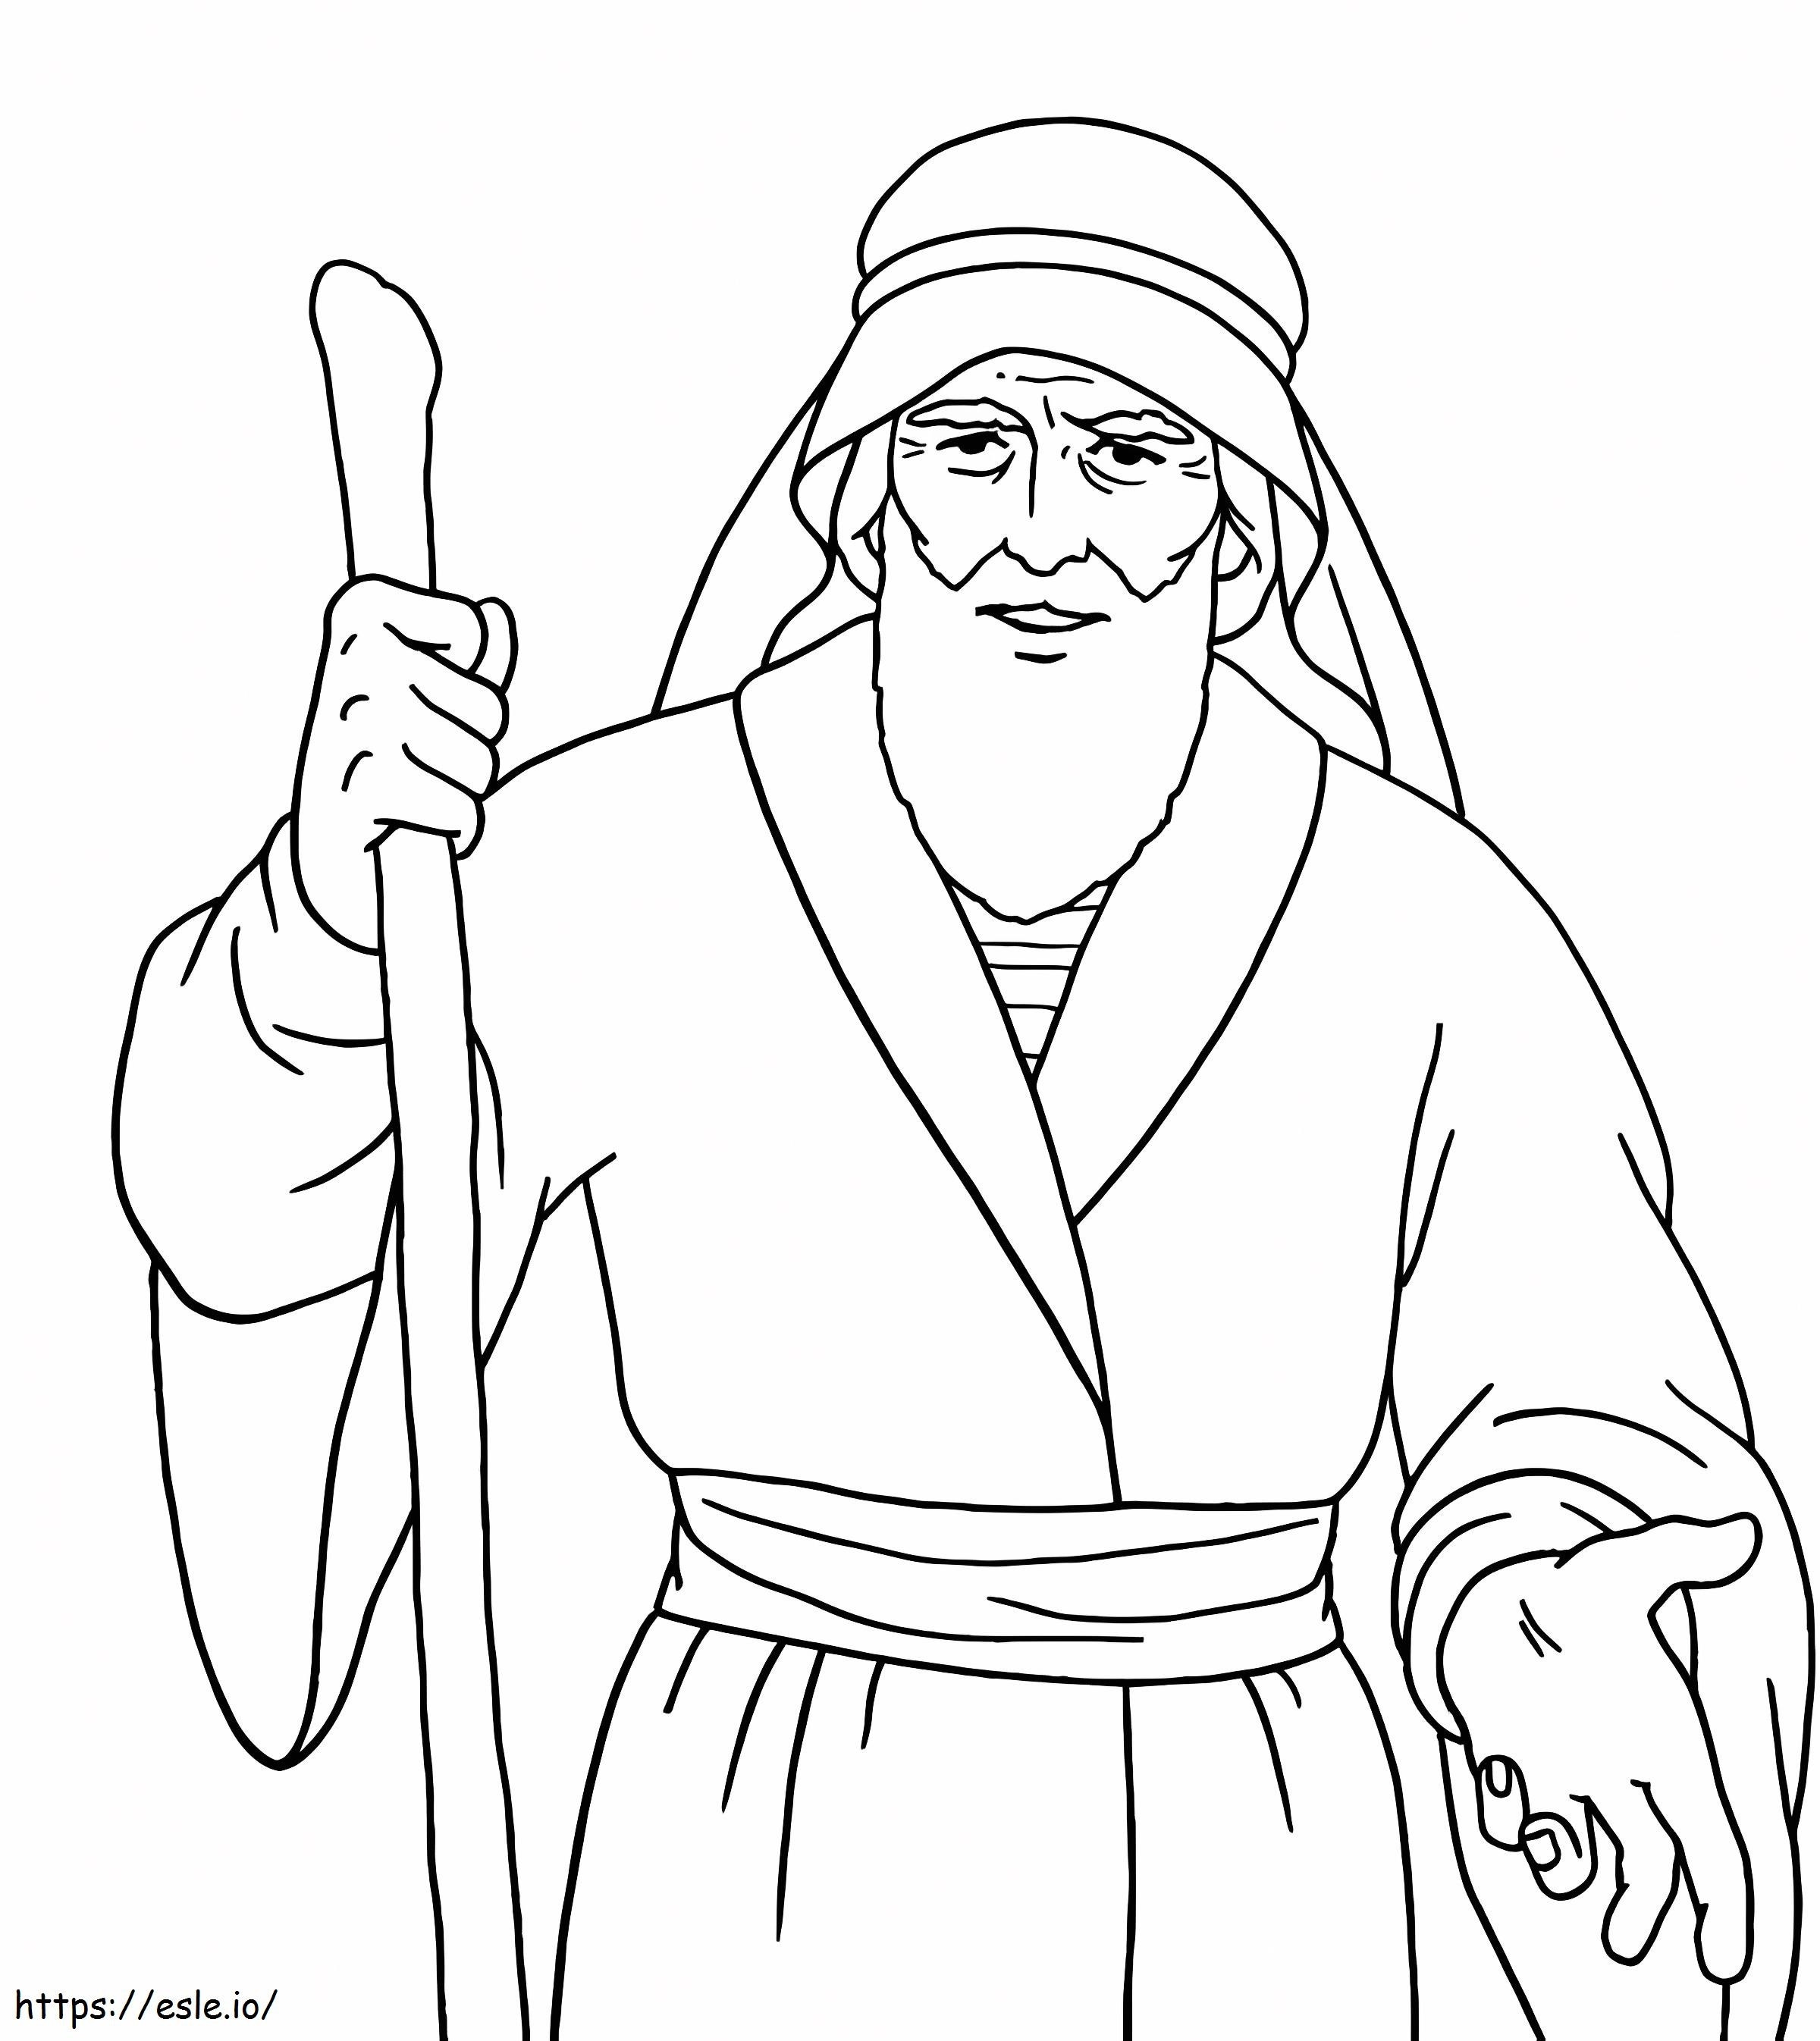 Beeindruckende Zeichnung von Moses zum Ausmalen ausmalbilder